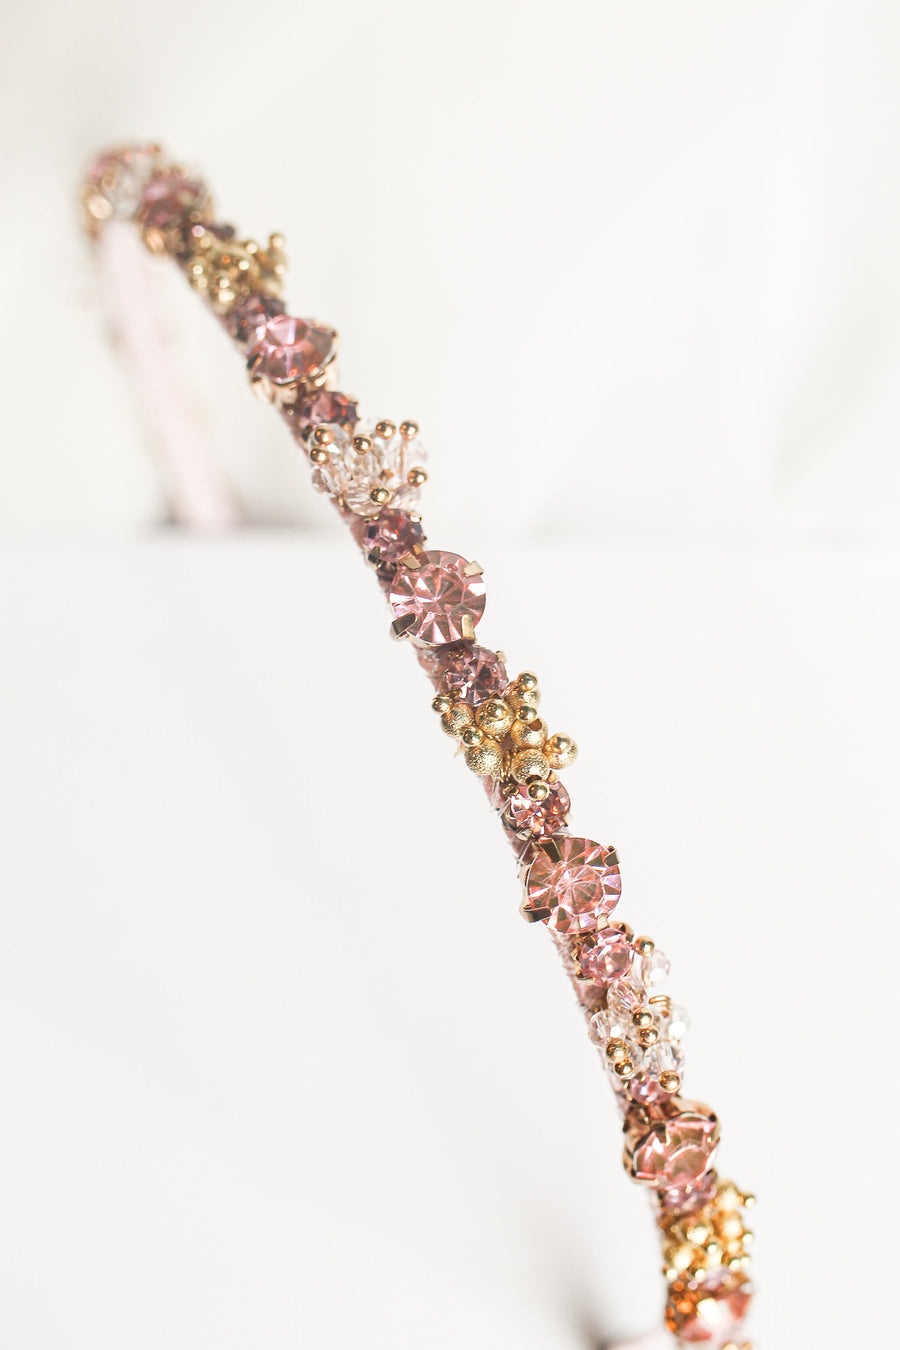 Fiona Headband in Pink Crystals